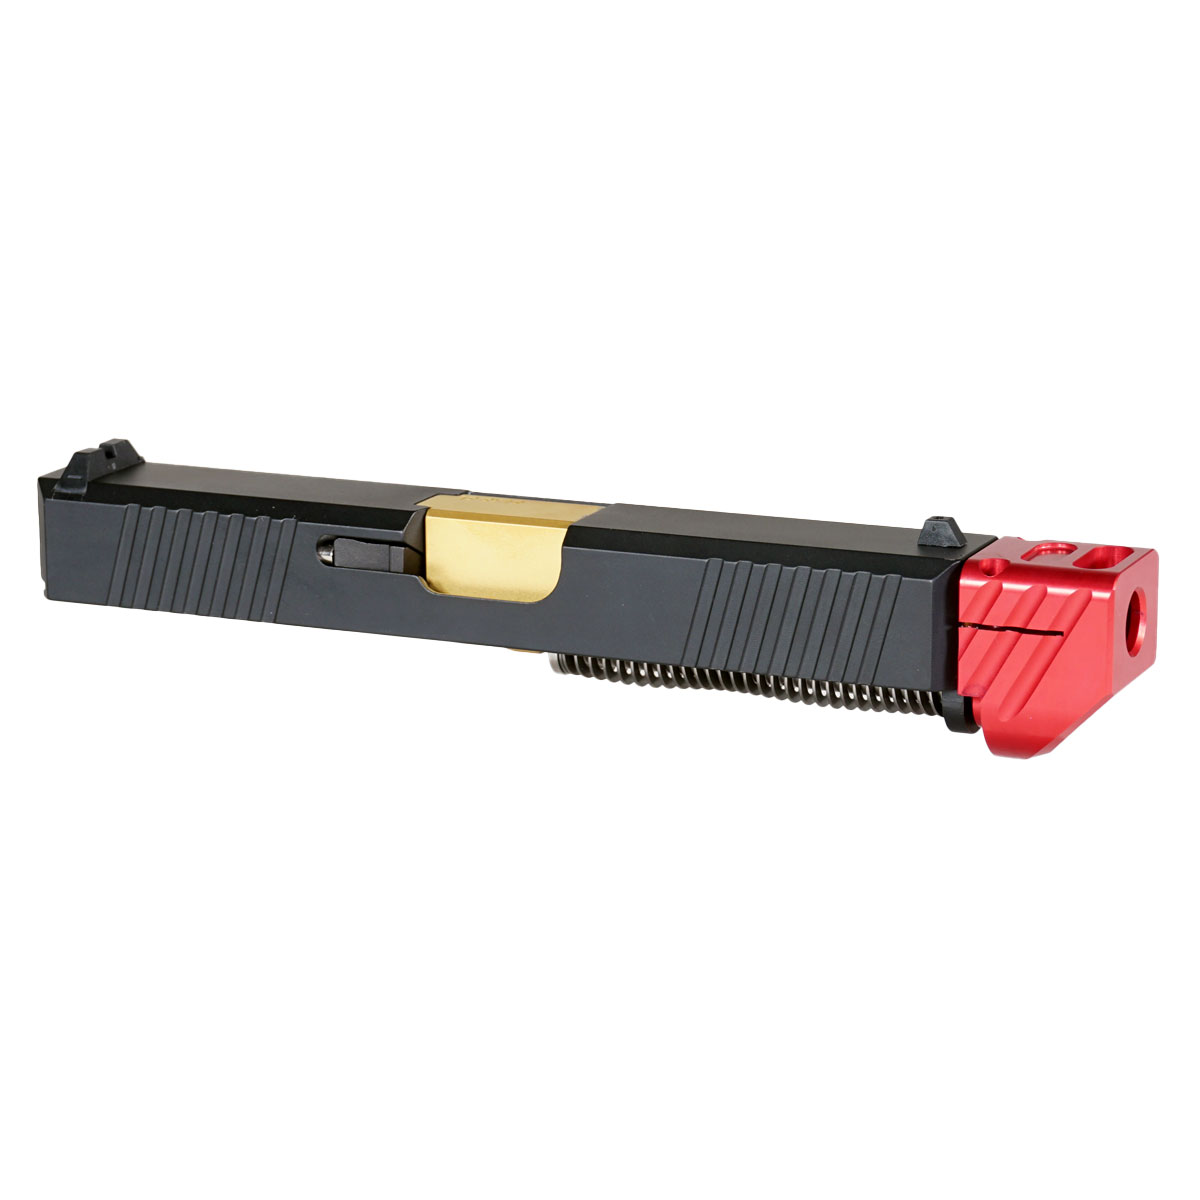 MMC 'Oakley V3 w/ Red Compensator' 9mm Complete Slide Kit - Glock 19 Gen 1-3 Compatible